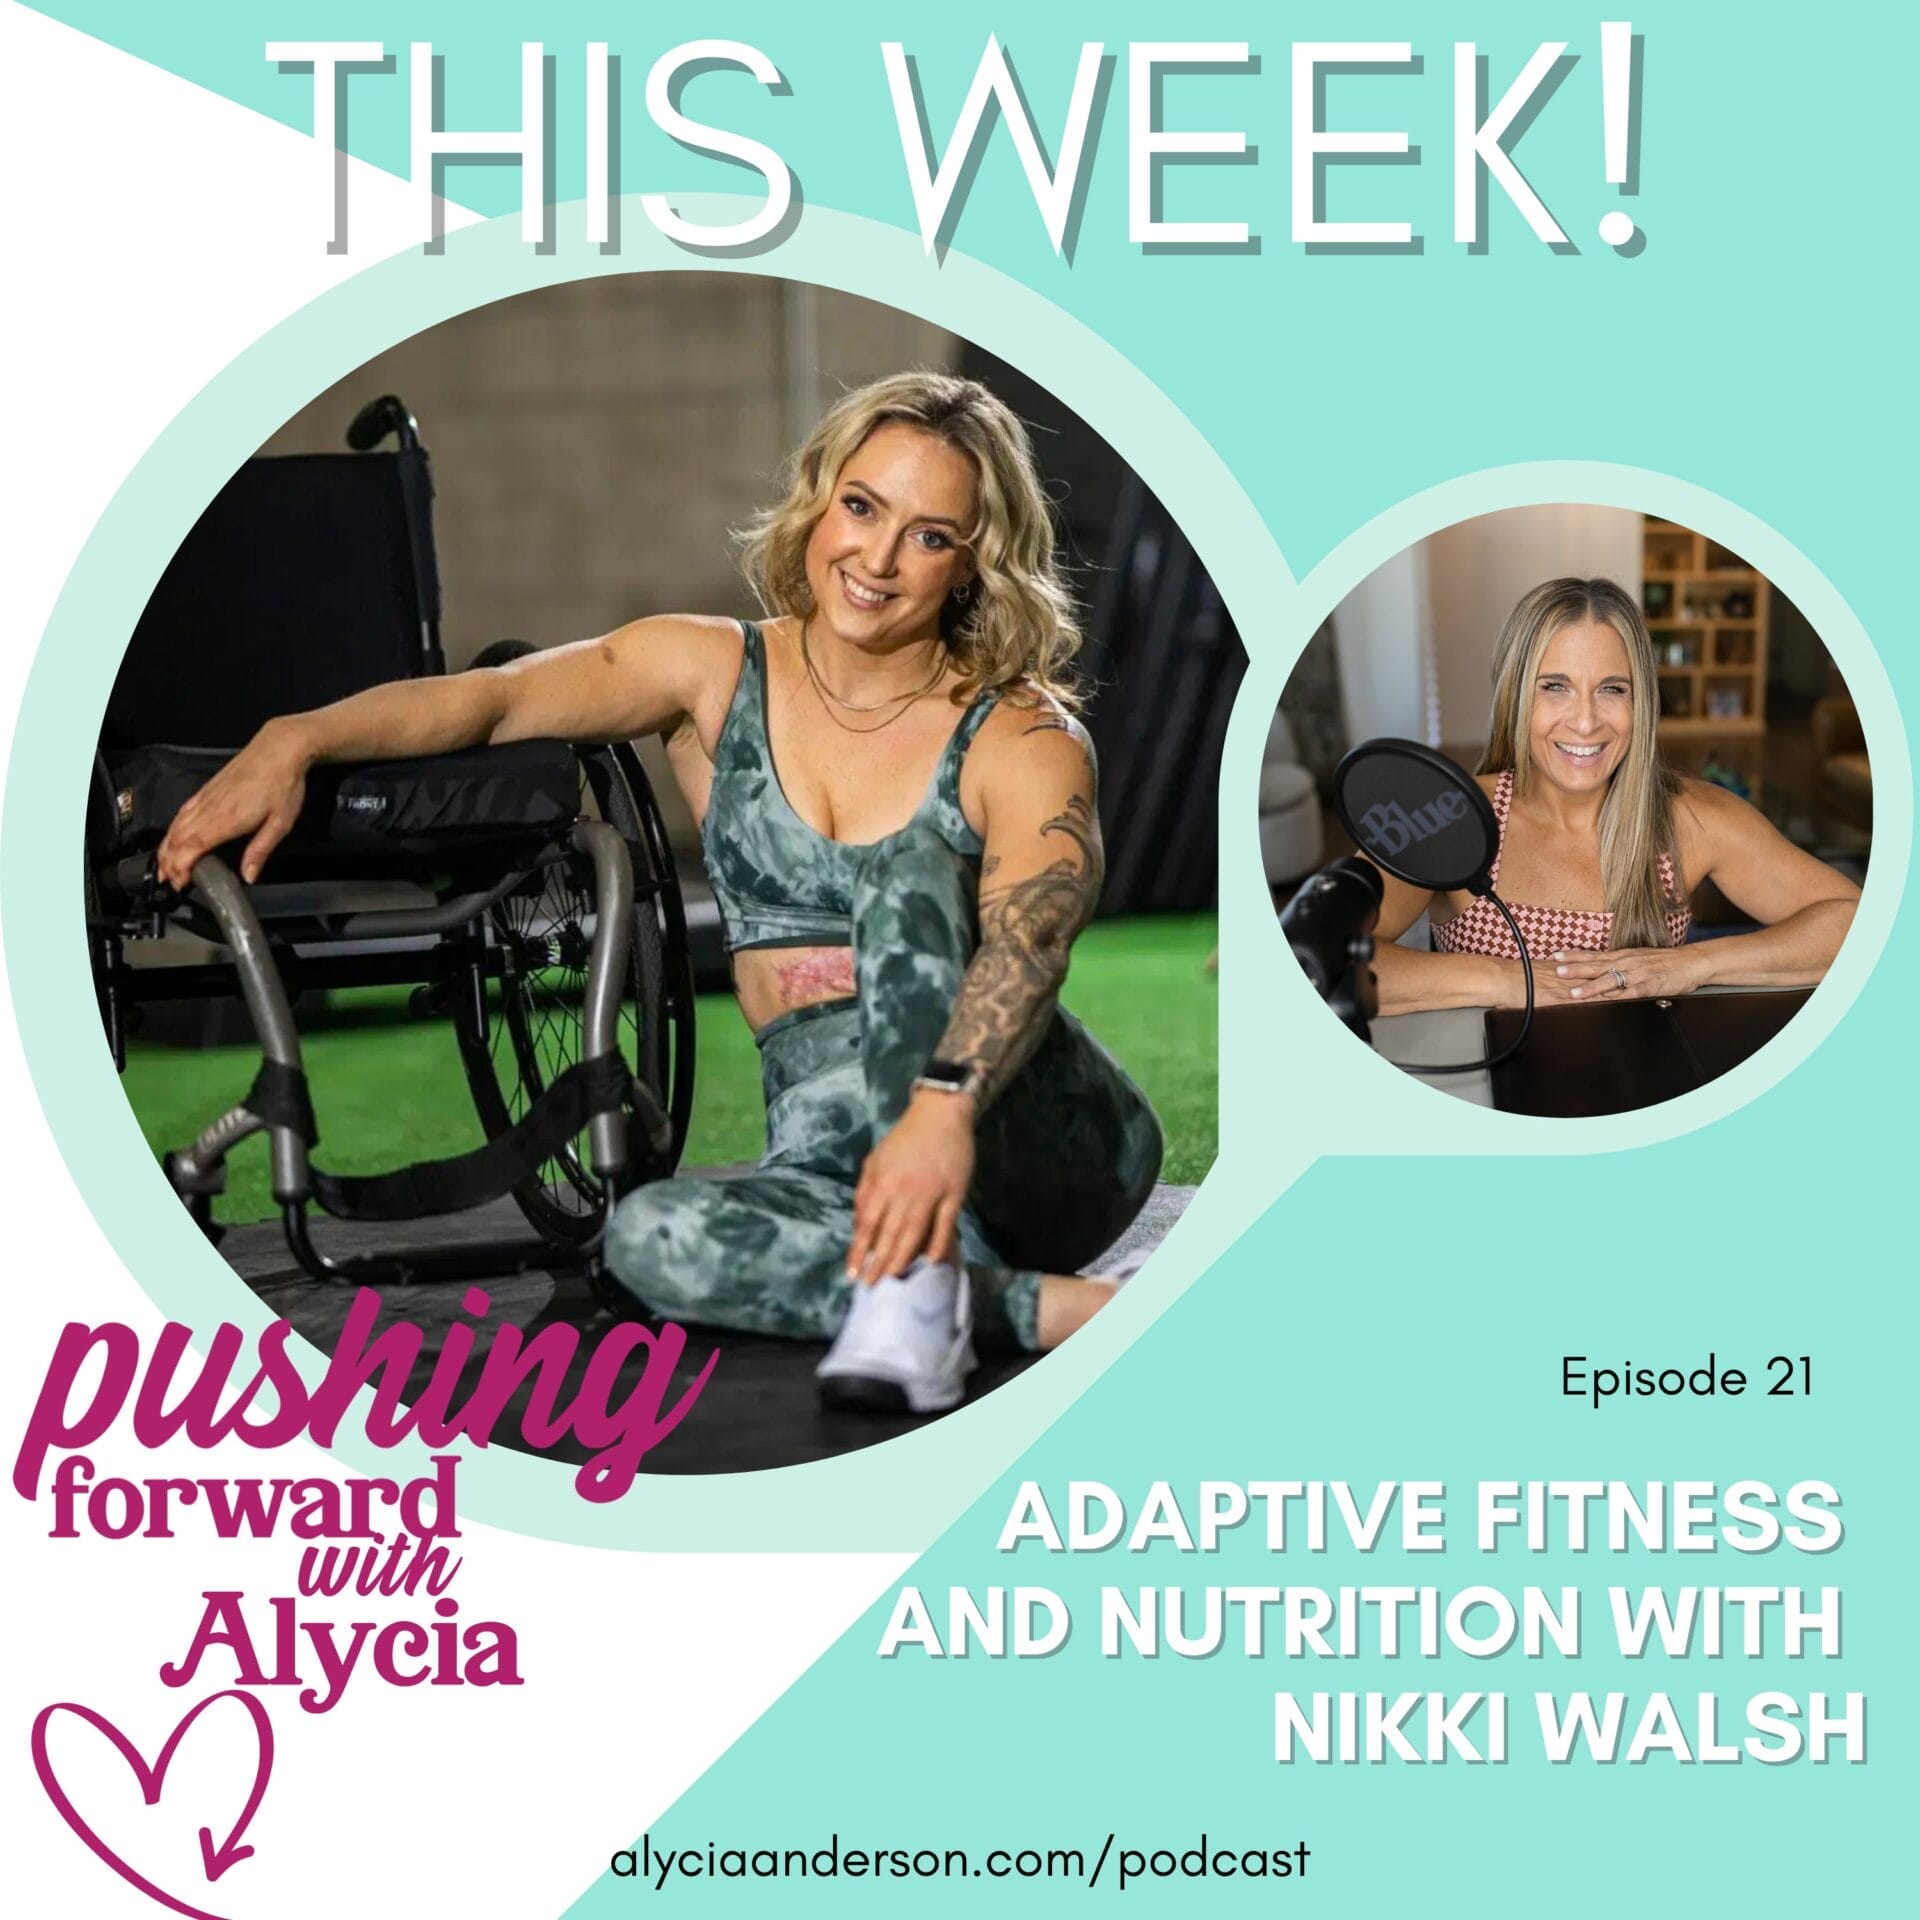 nikki walsh episode twenty one on pushing forward with alycia podcast about adaptive fitness